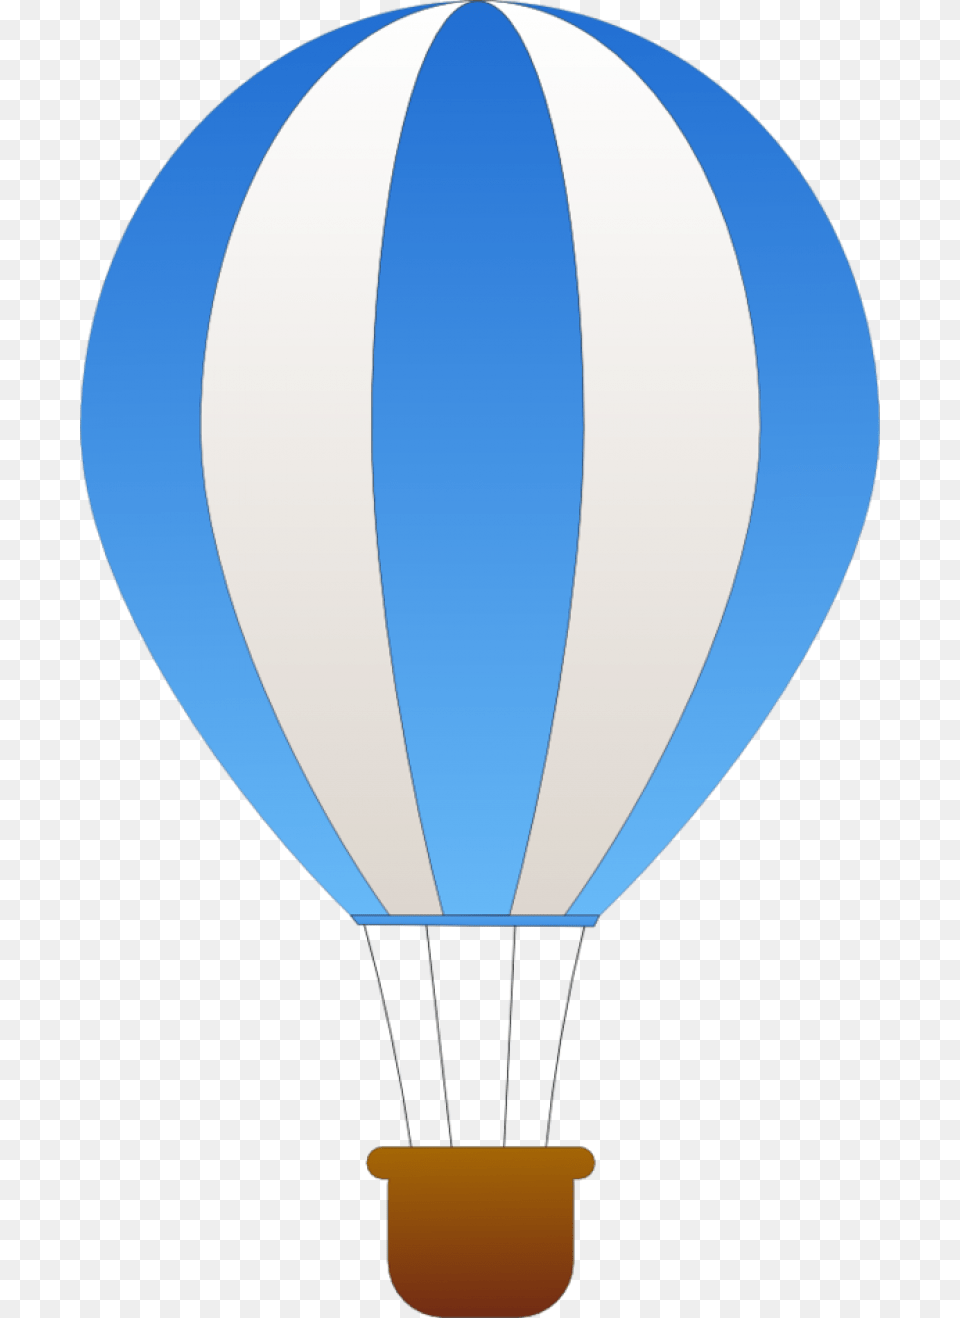 Blue And White Hot Air Balloon, Aircraft, Hot Air Balloon, Transportation, Vehicle Png Image